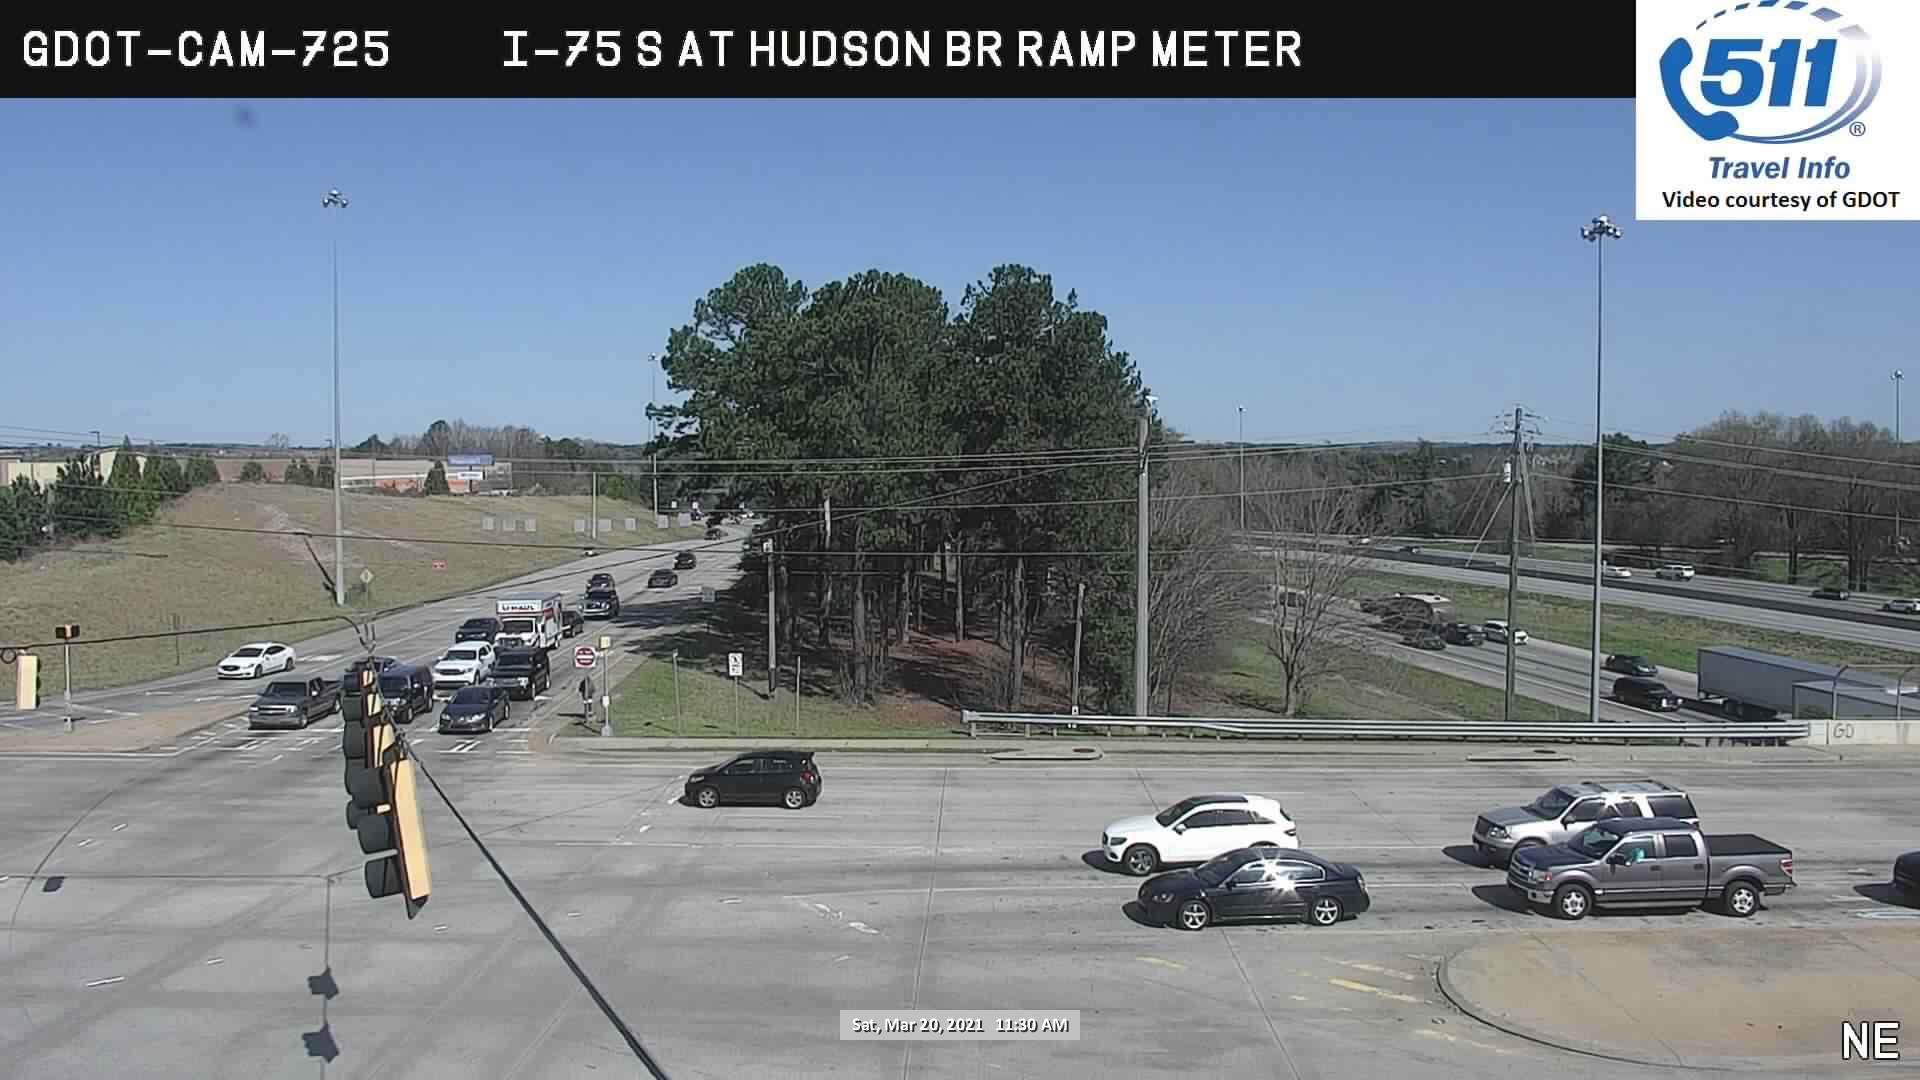 I-75 : HUDSON BR RAMP METER (S) (5943) - Atlanta and Georgia